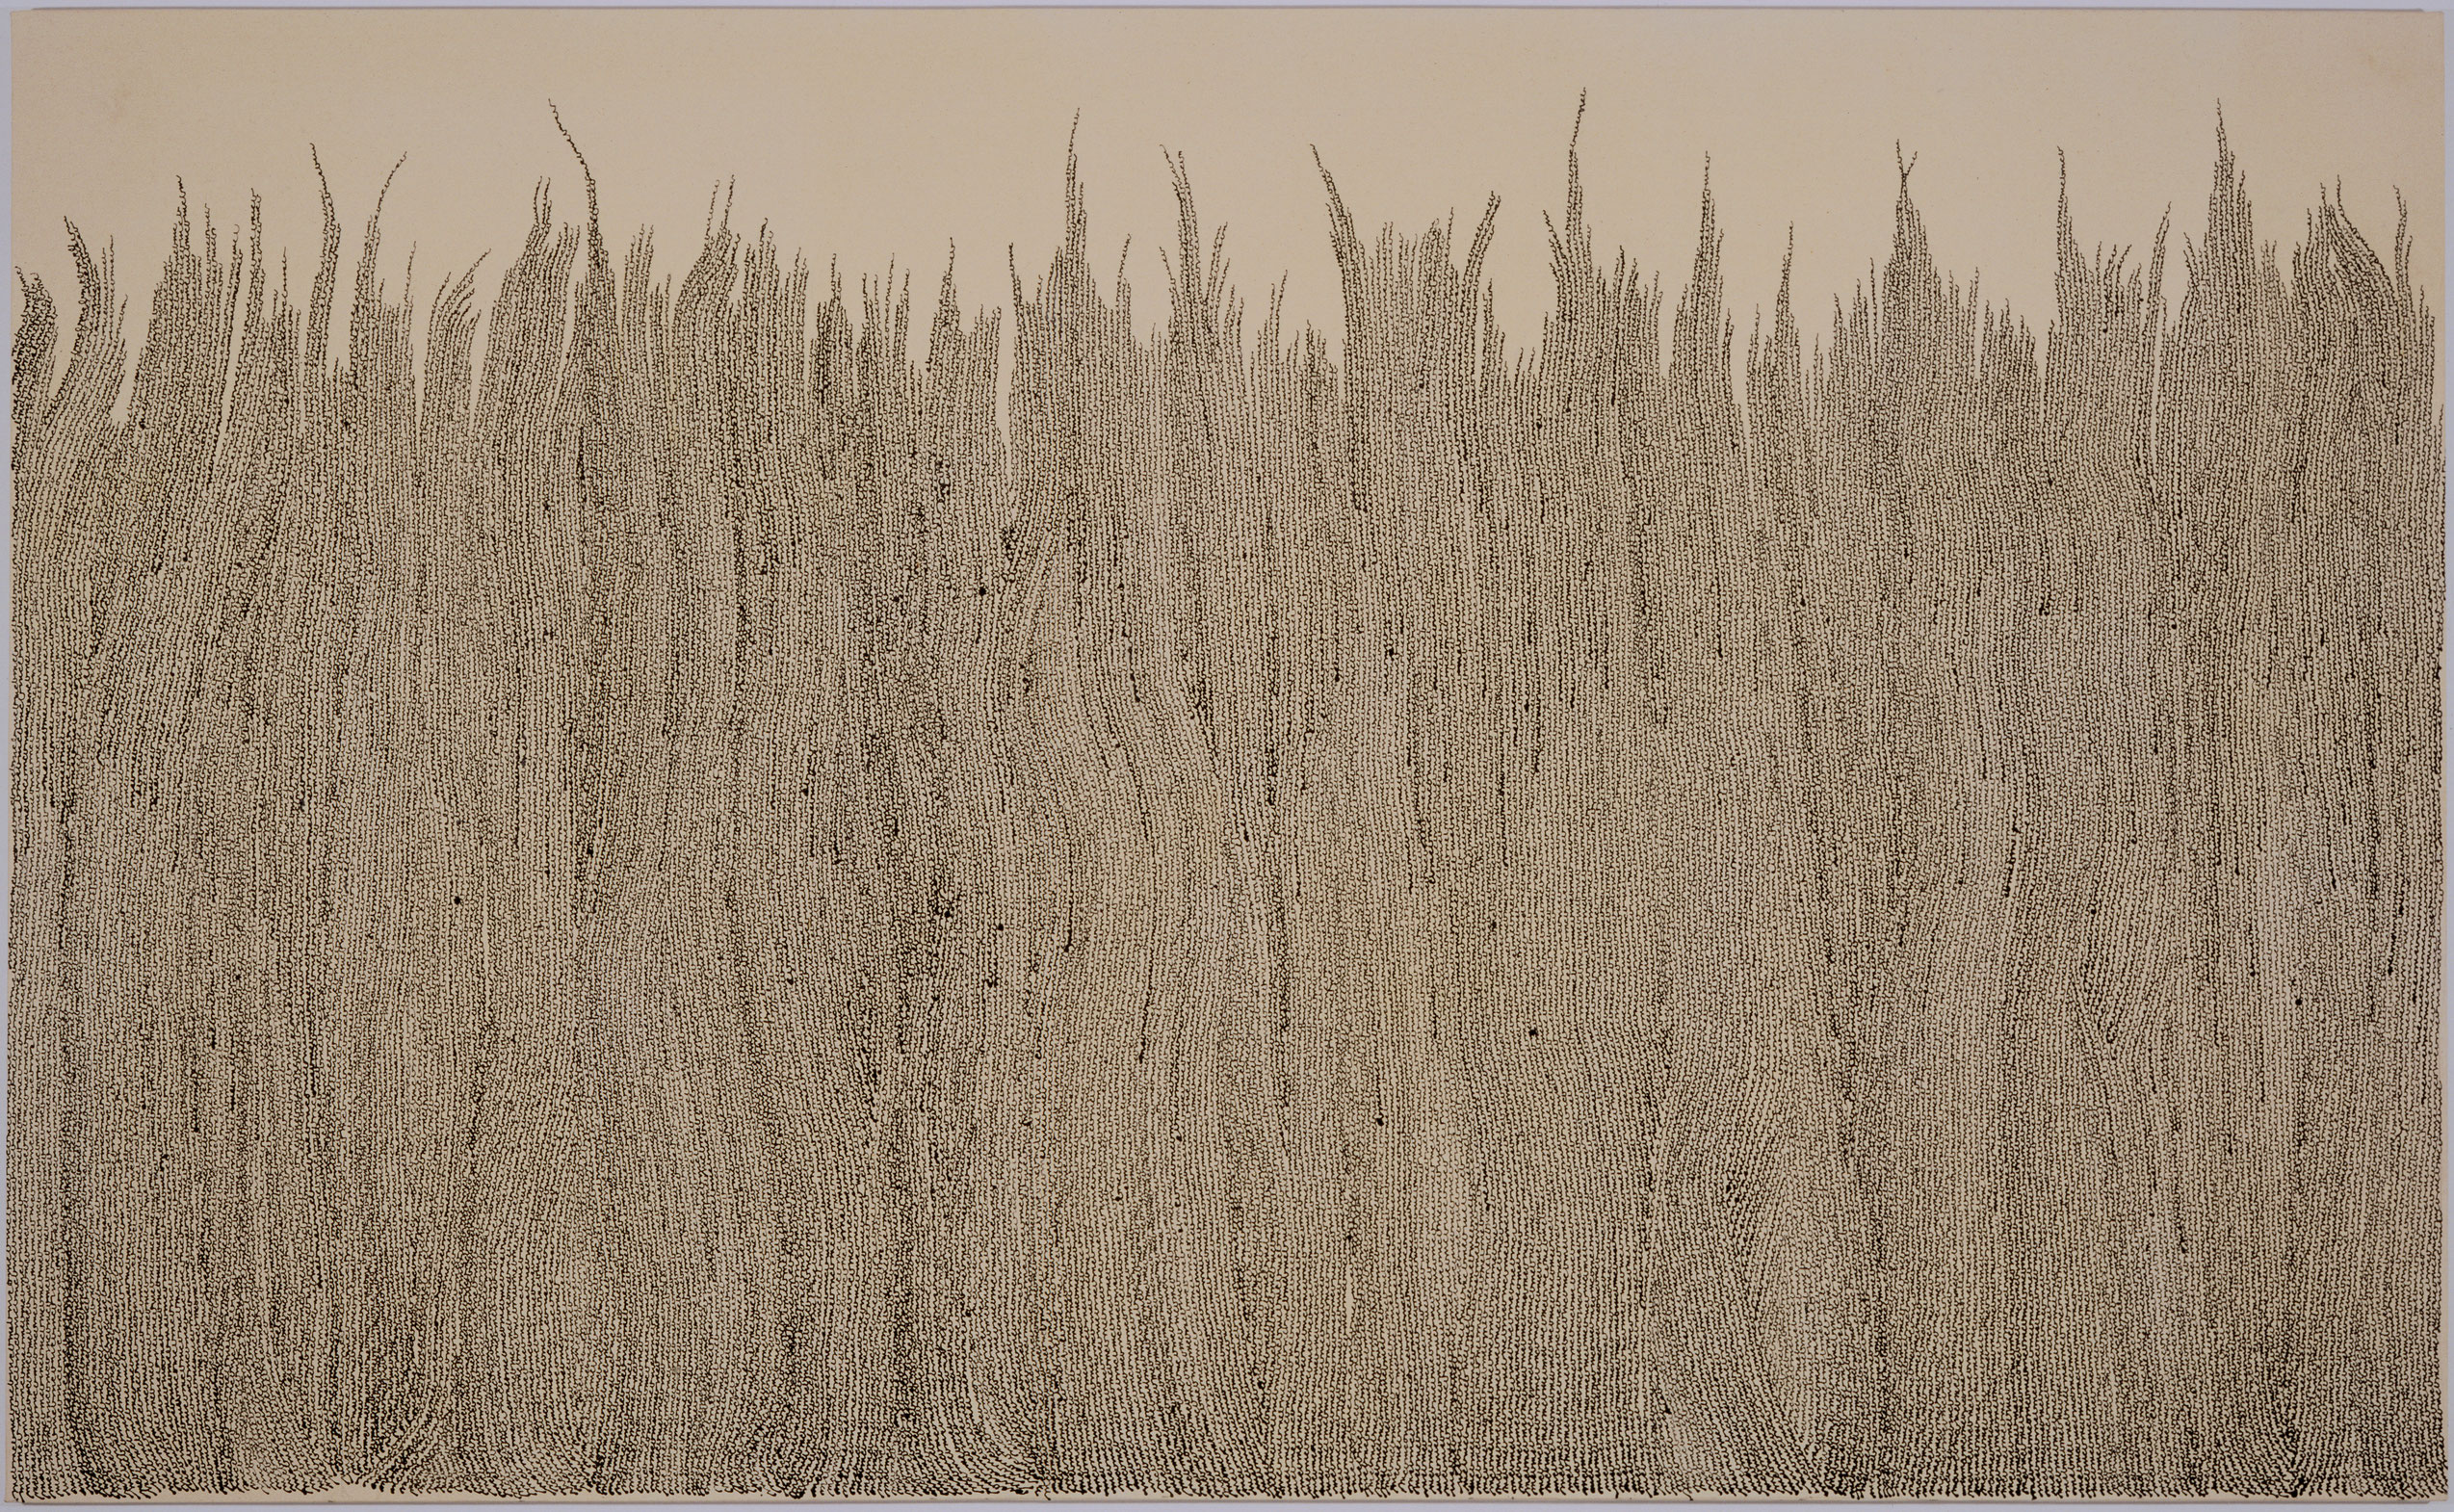 « mcb » les blés, 1999, Marie-Claude Bouthillier, Encaustique et vernis polymère sur toile.